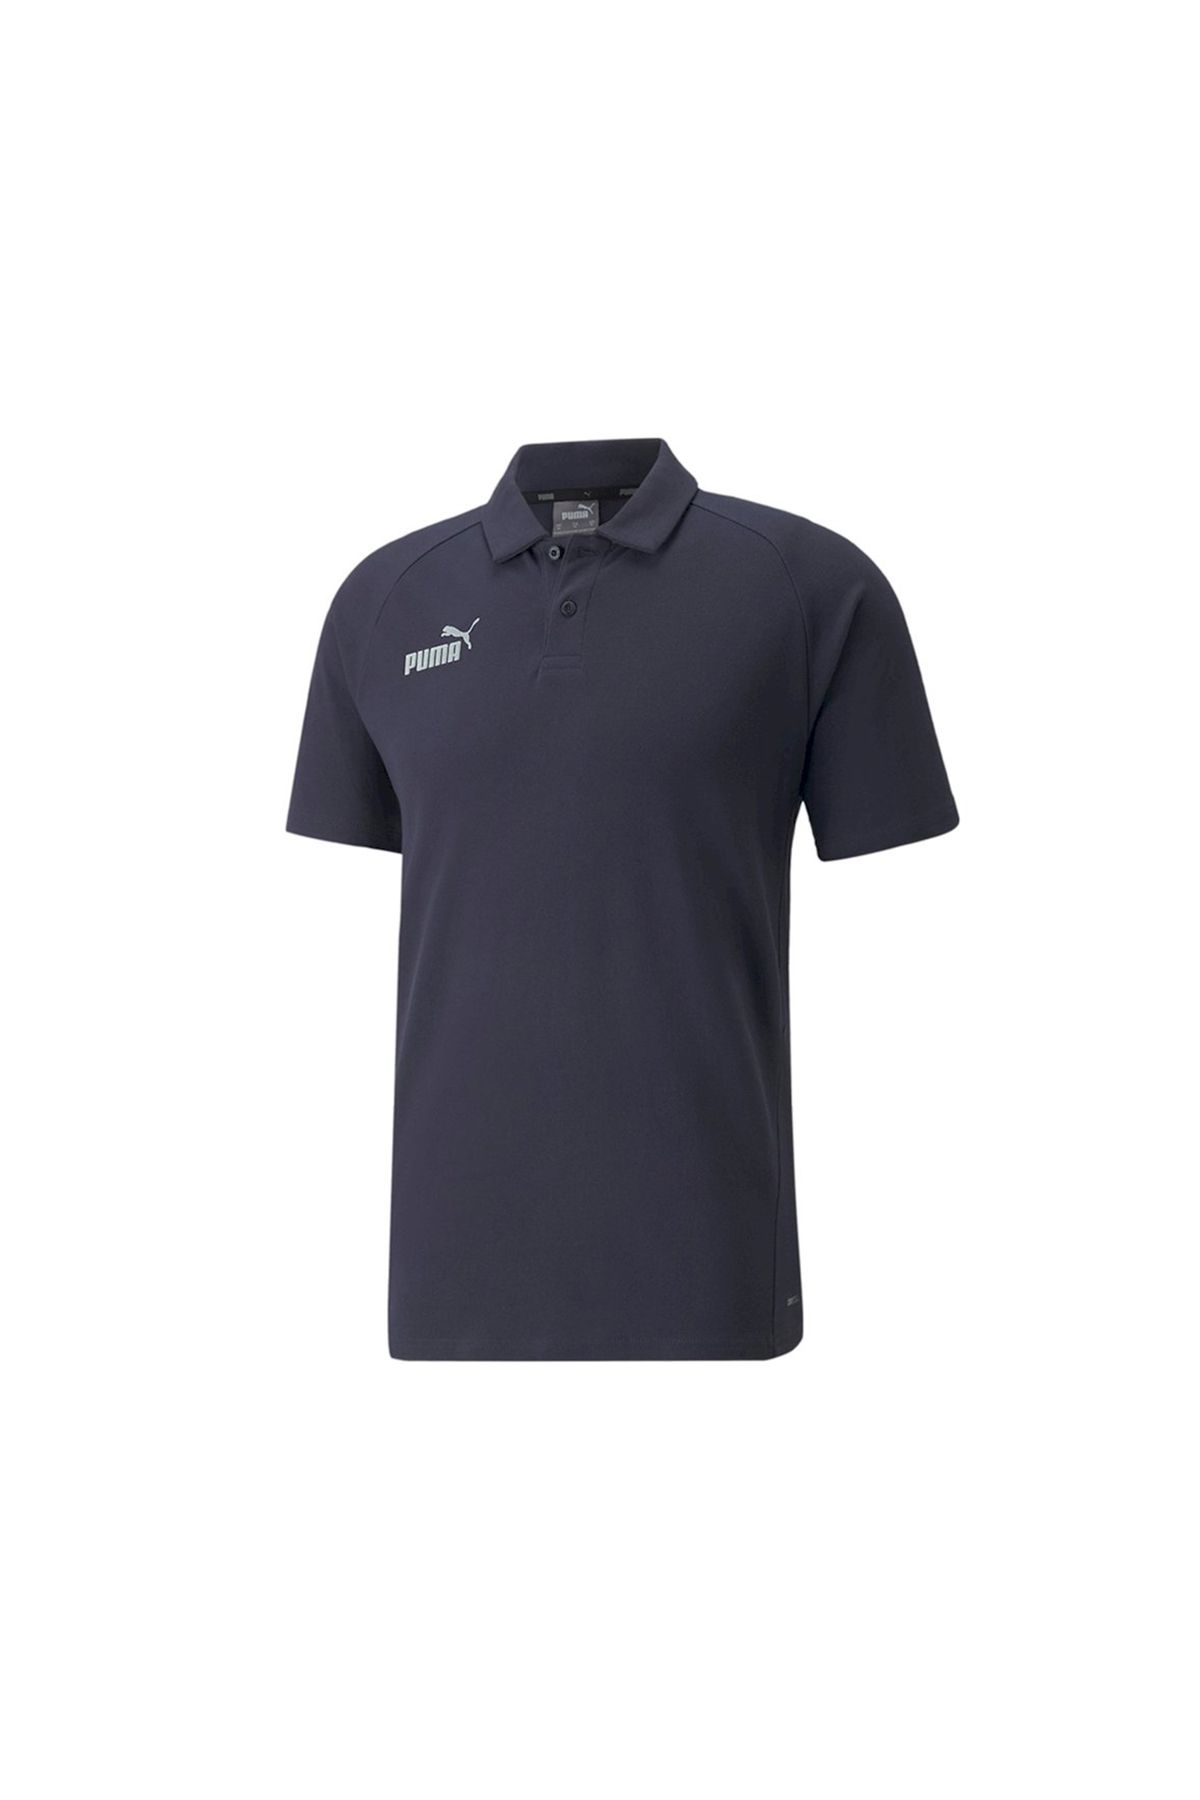 Puma Teamfinal Casuals Pamuklu Erkek Günlük Kullanıma ve Spora Uygun Polo Yakalı T-shirt